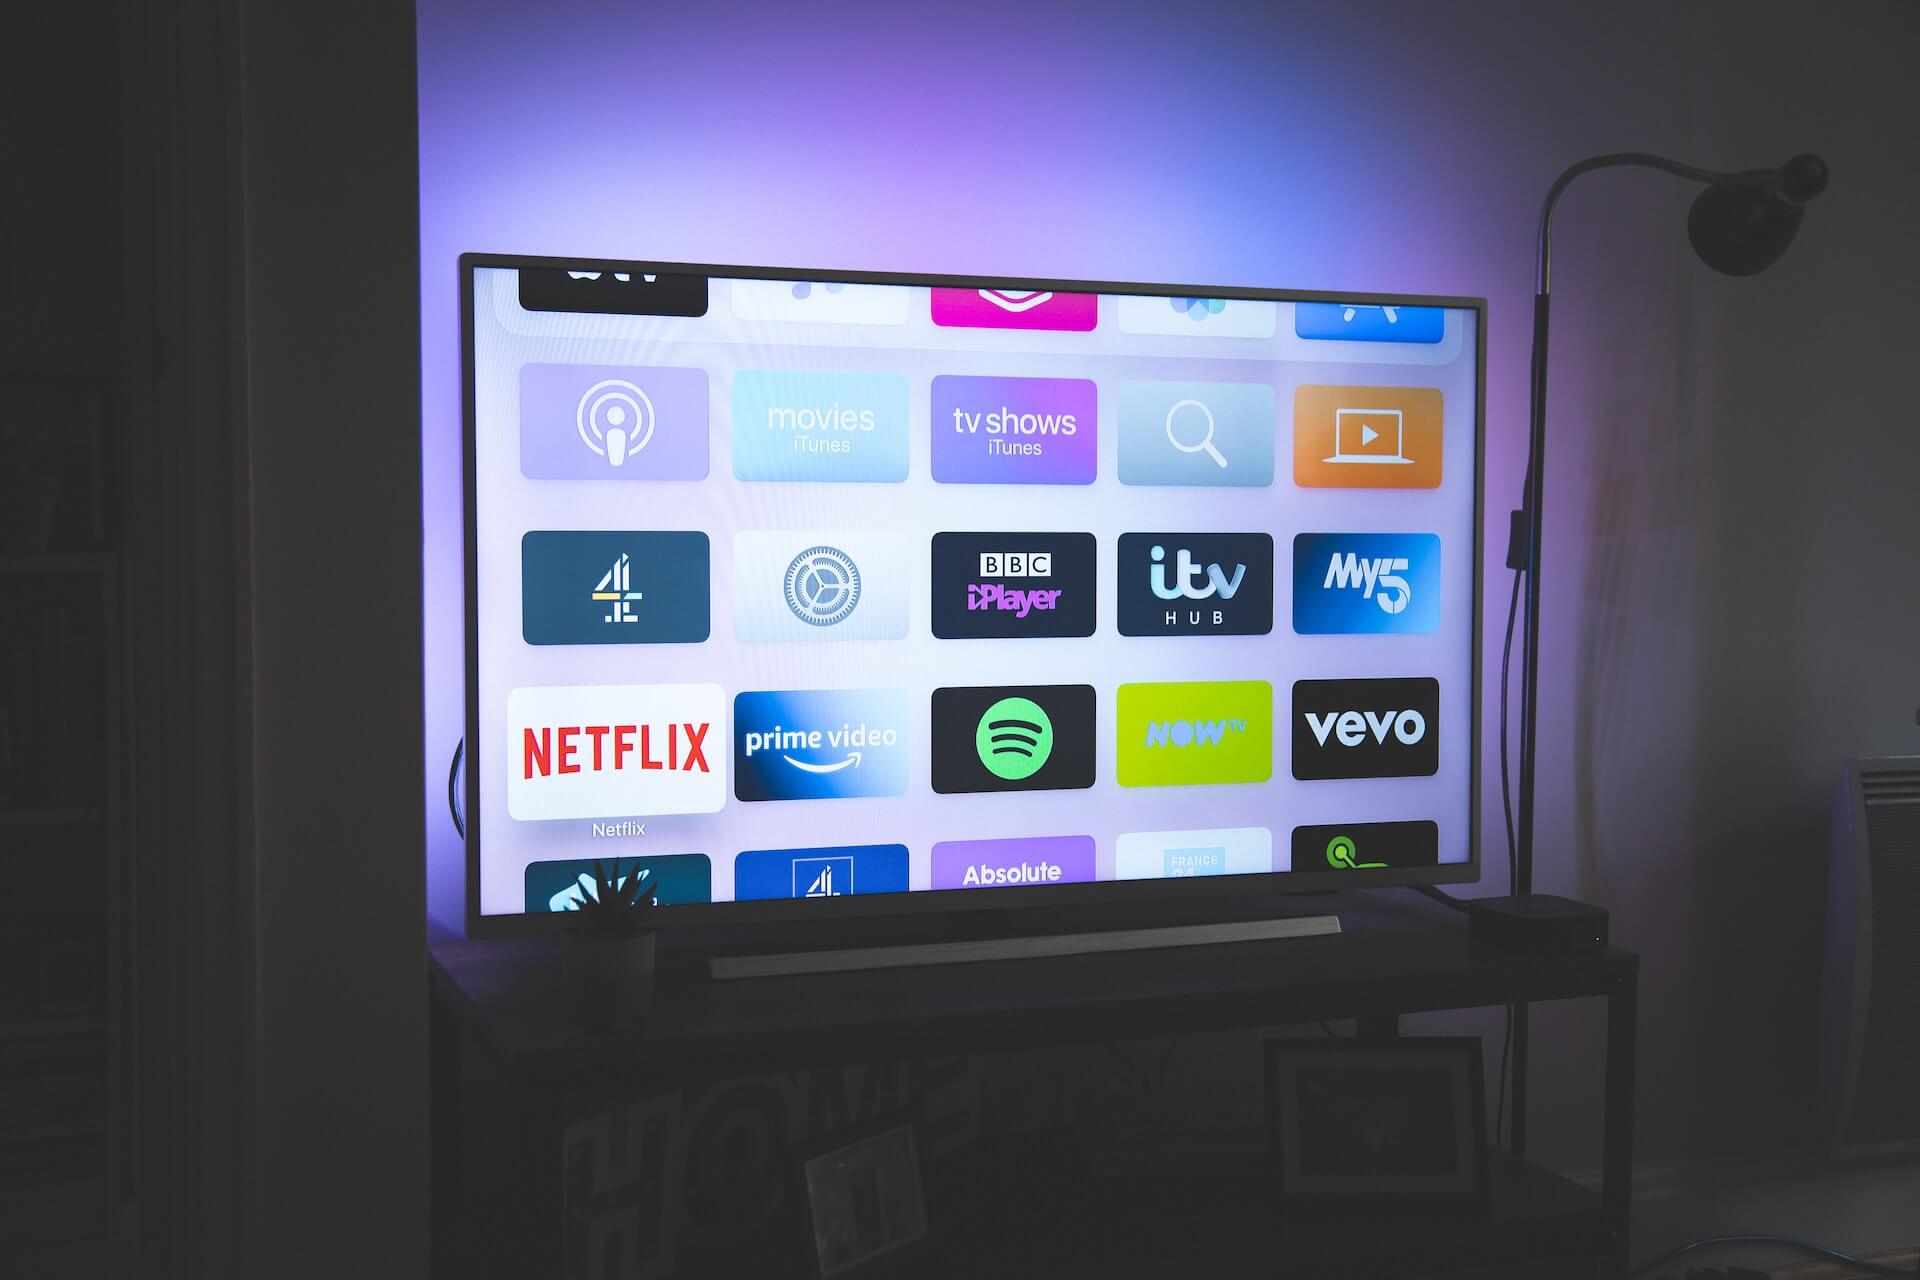 Digitec Luncurkan Dua Model Smart TV Murah, Harga Mulai Dari Rp 1 Jutaan